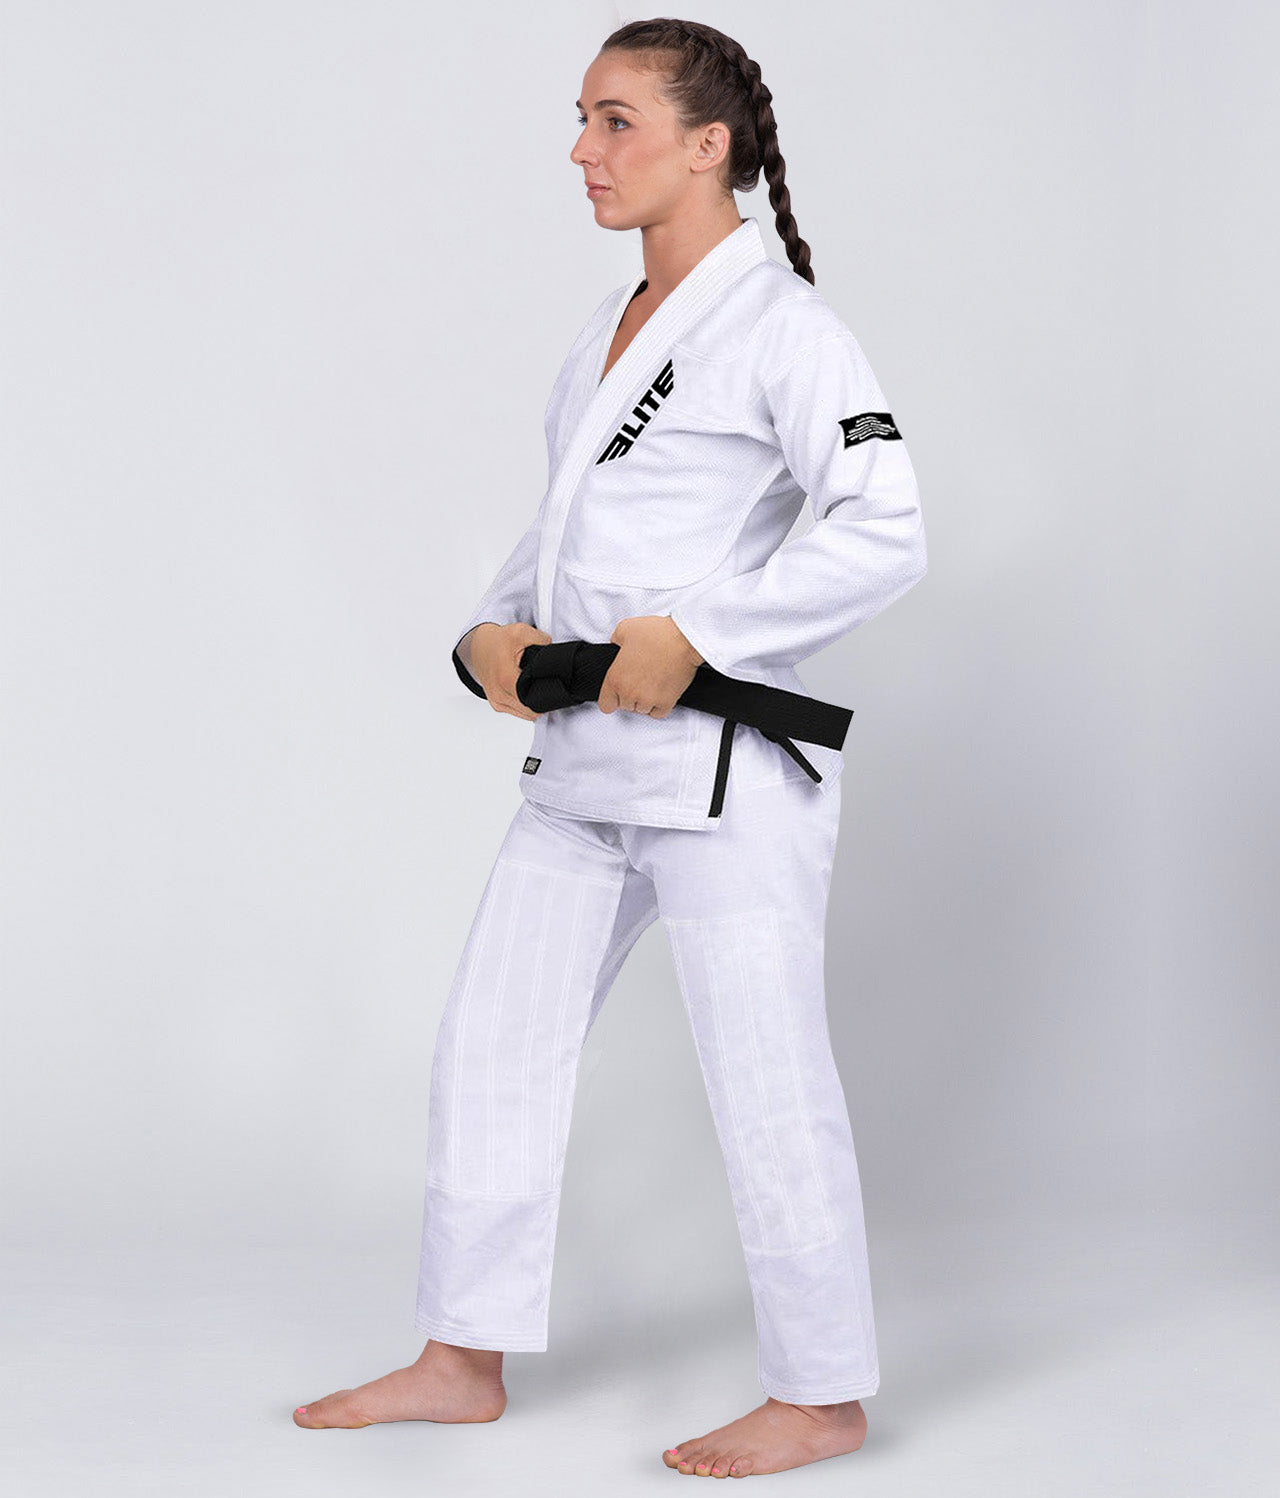 Elite Sports Women's Core White Brazilian Jiu Jitsu BJJ Gi